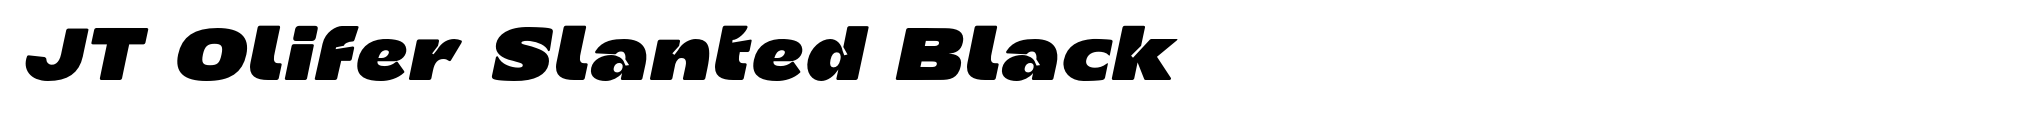 JT Olifer Slanted Black image